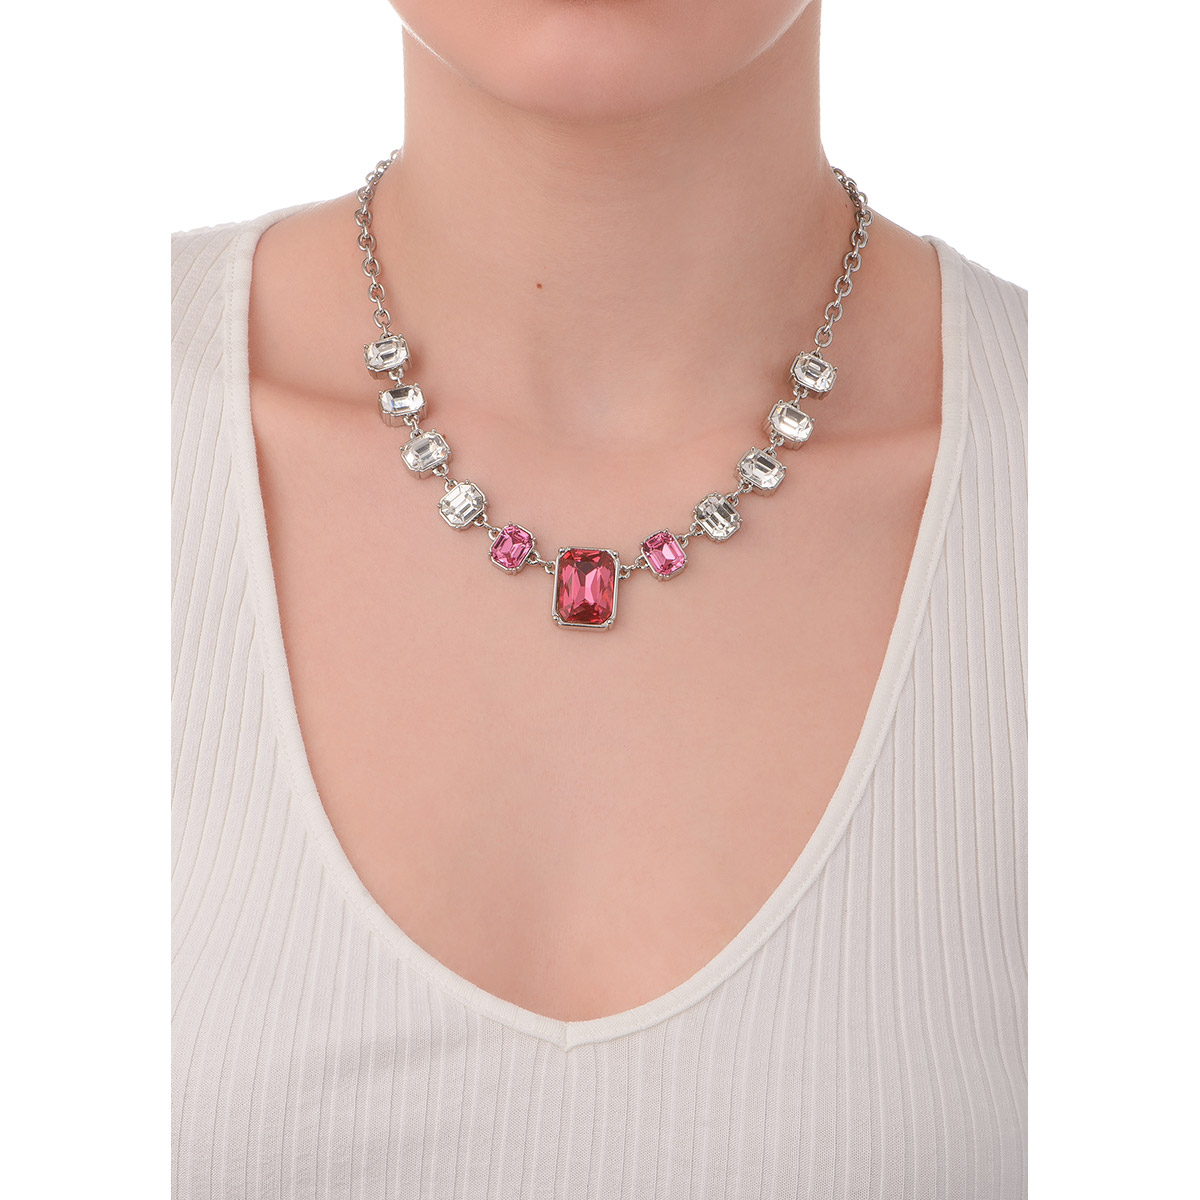 Collar de 40 cm + 10 cm de ext, en baño de platino, con piedras en tono rosa y cristal.